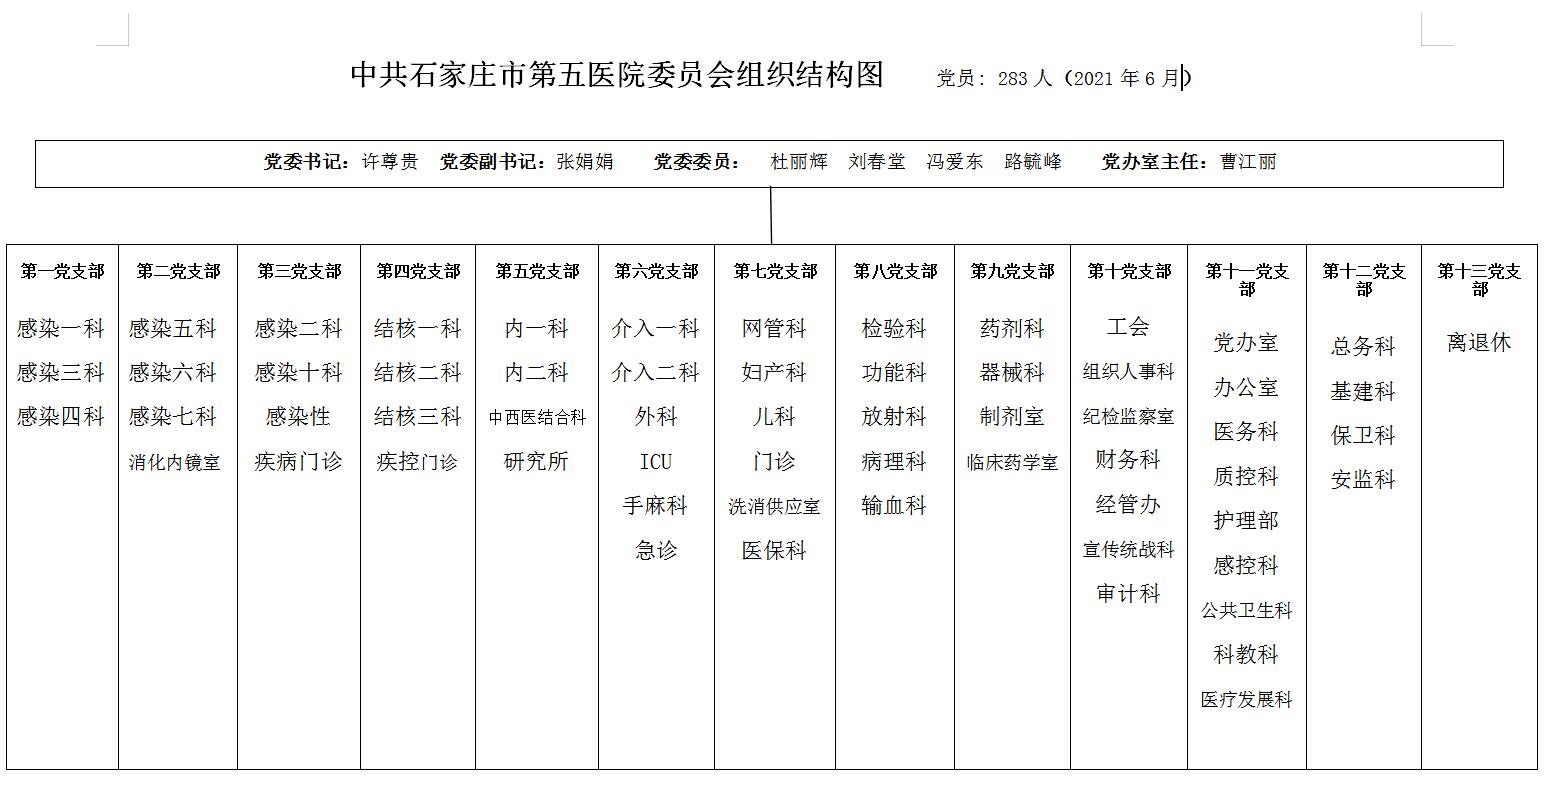 中共石家庄市第五医院委员会组织结构图